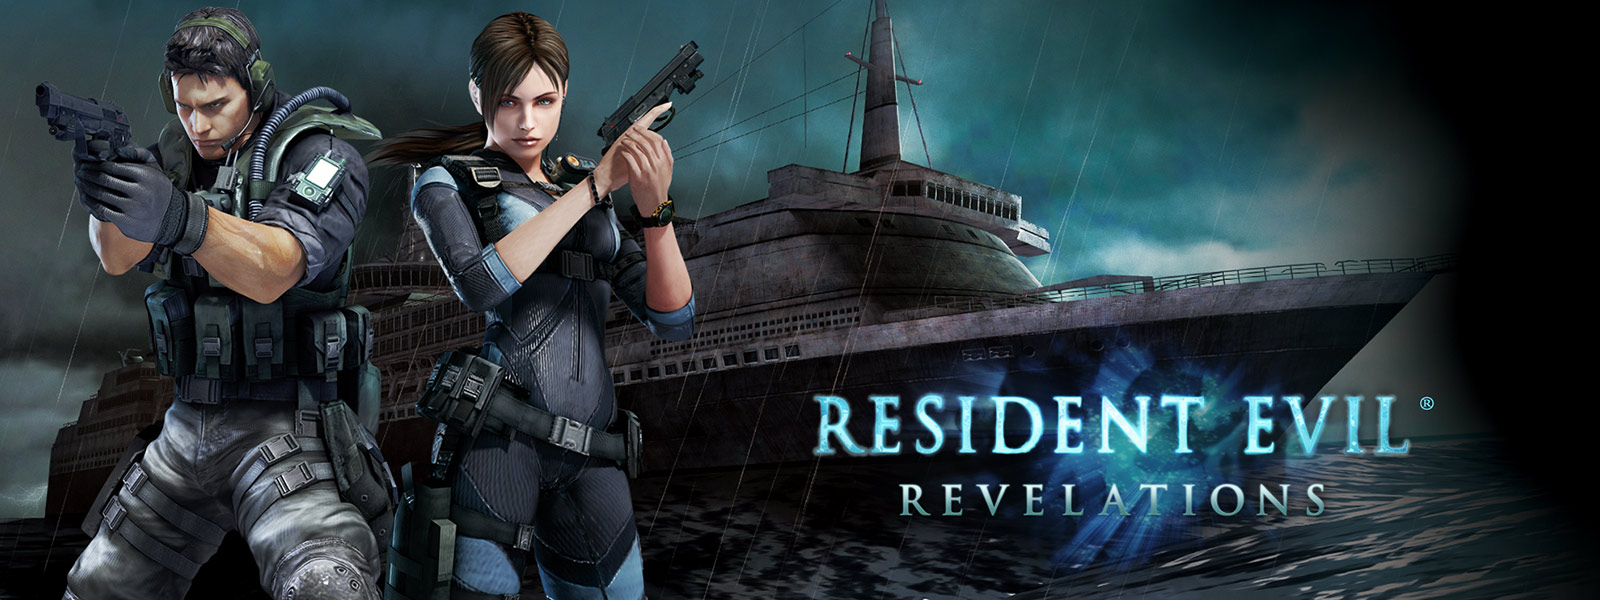 Resident Evil Revelations, twee personen met pistolen voor een spookachtig uitziend cruiseschip